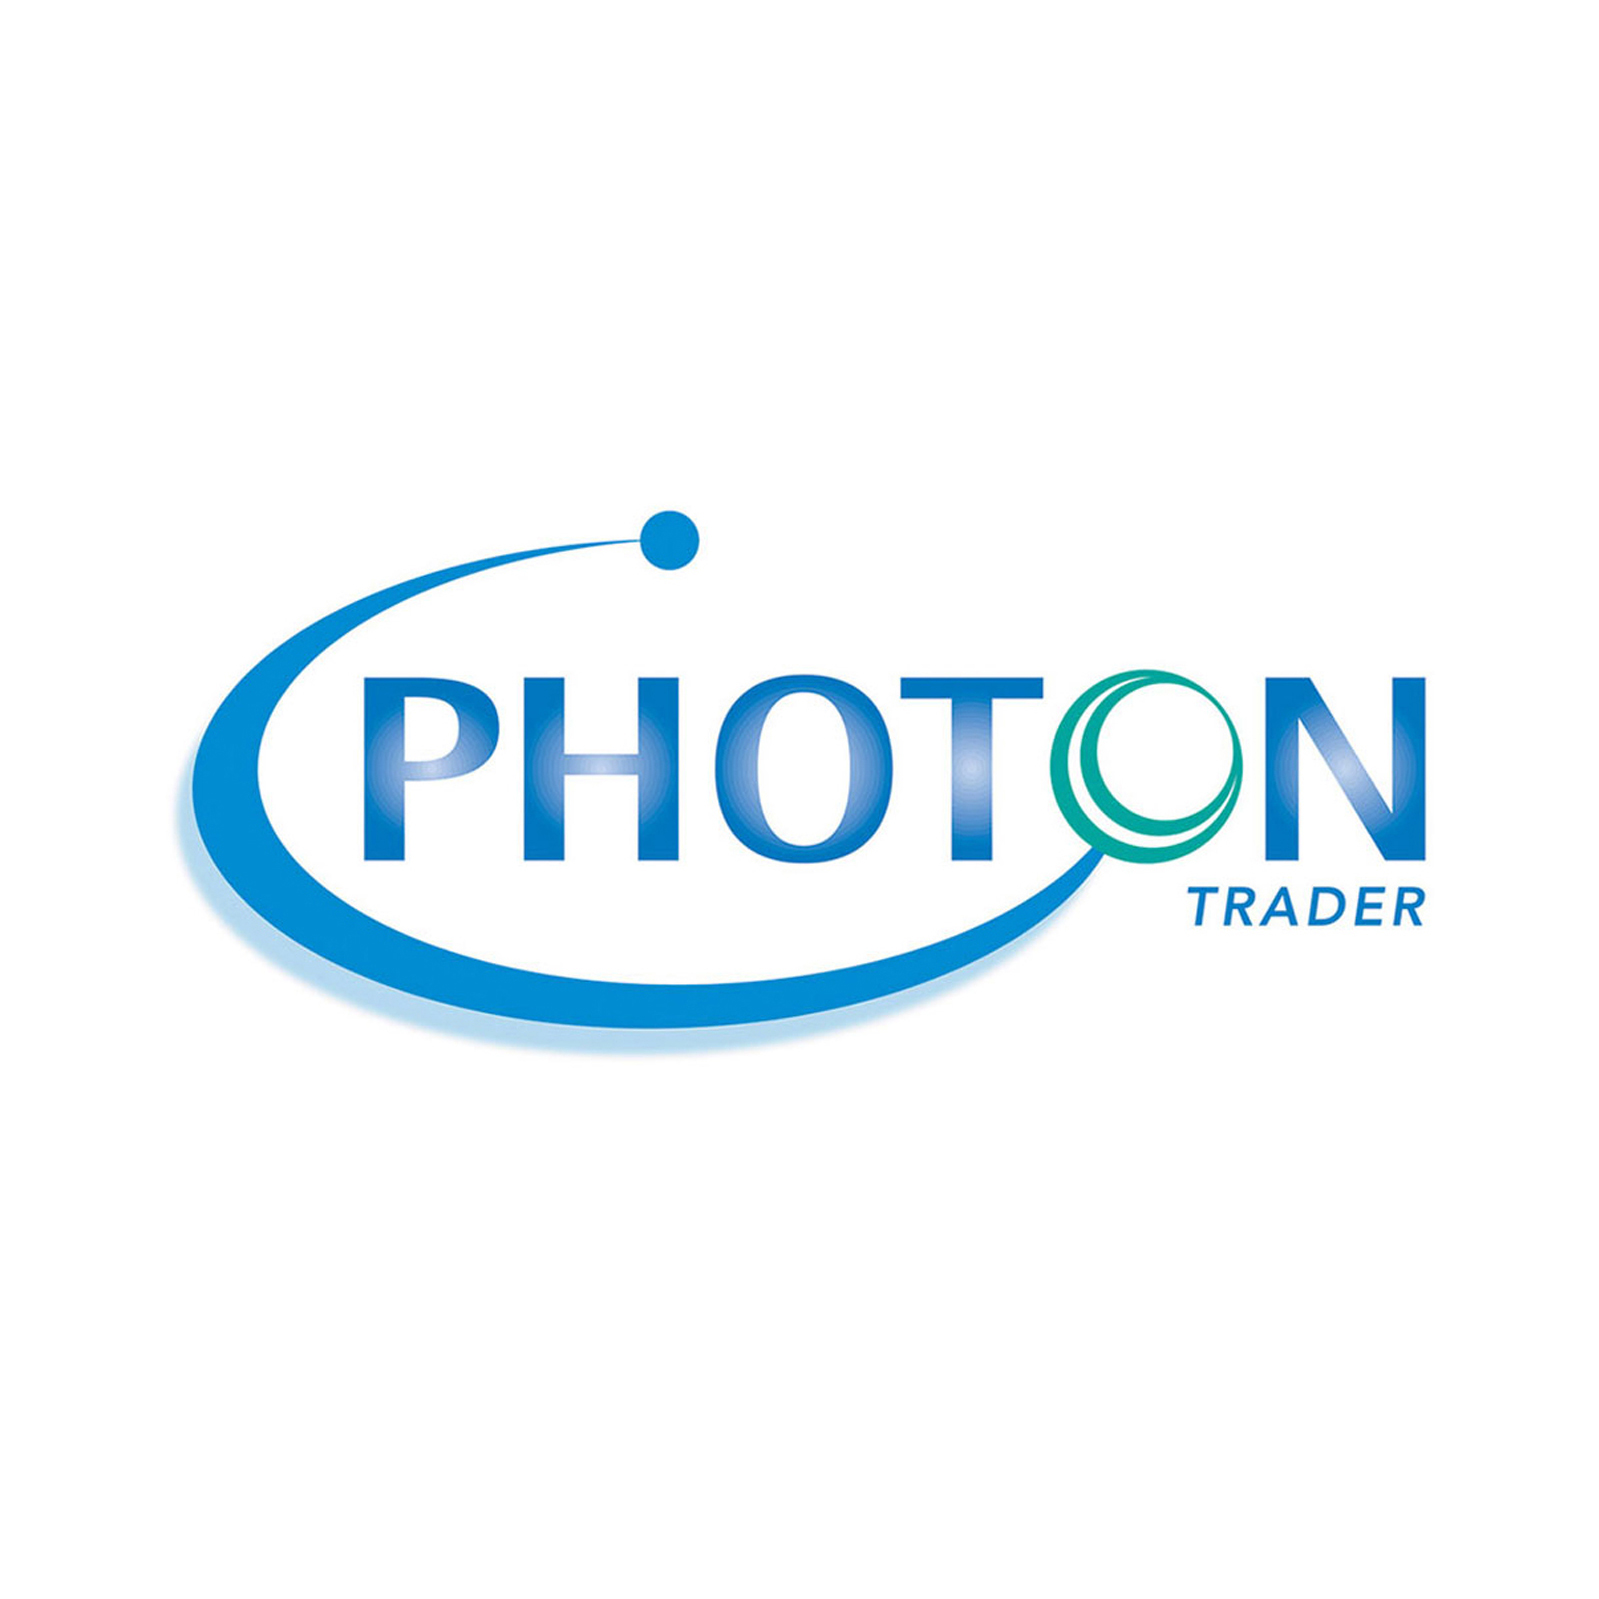 PhotonTrader Logo; Jane Rubin, Creative Director, Designer; © Jane Rubin 2003